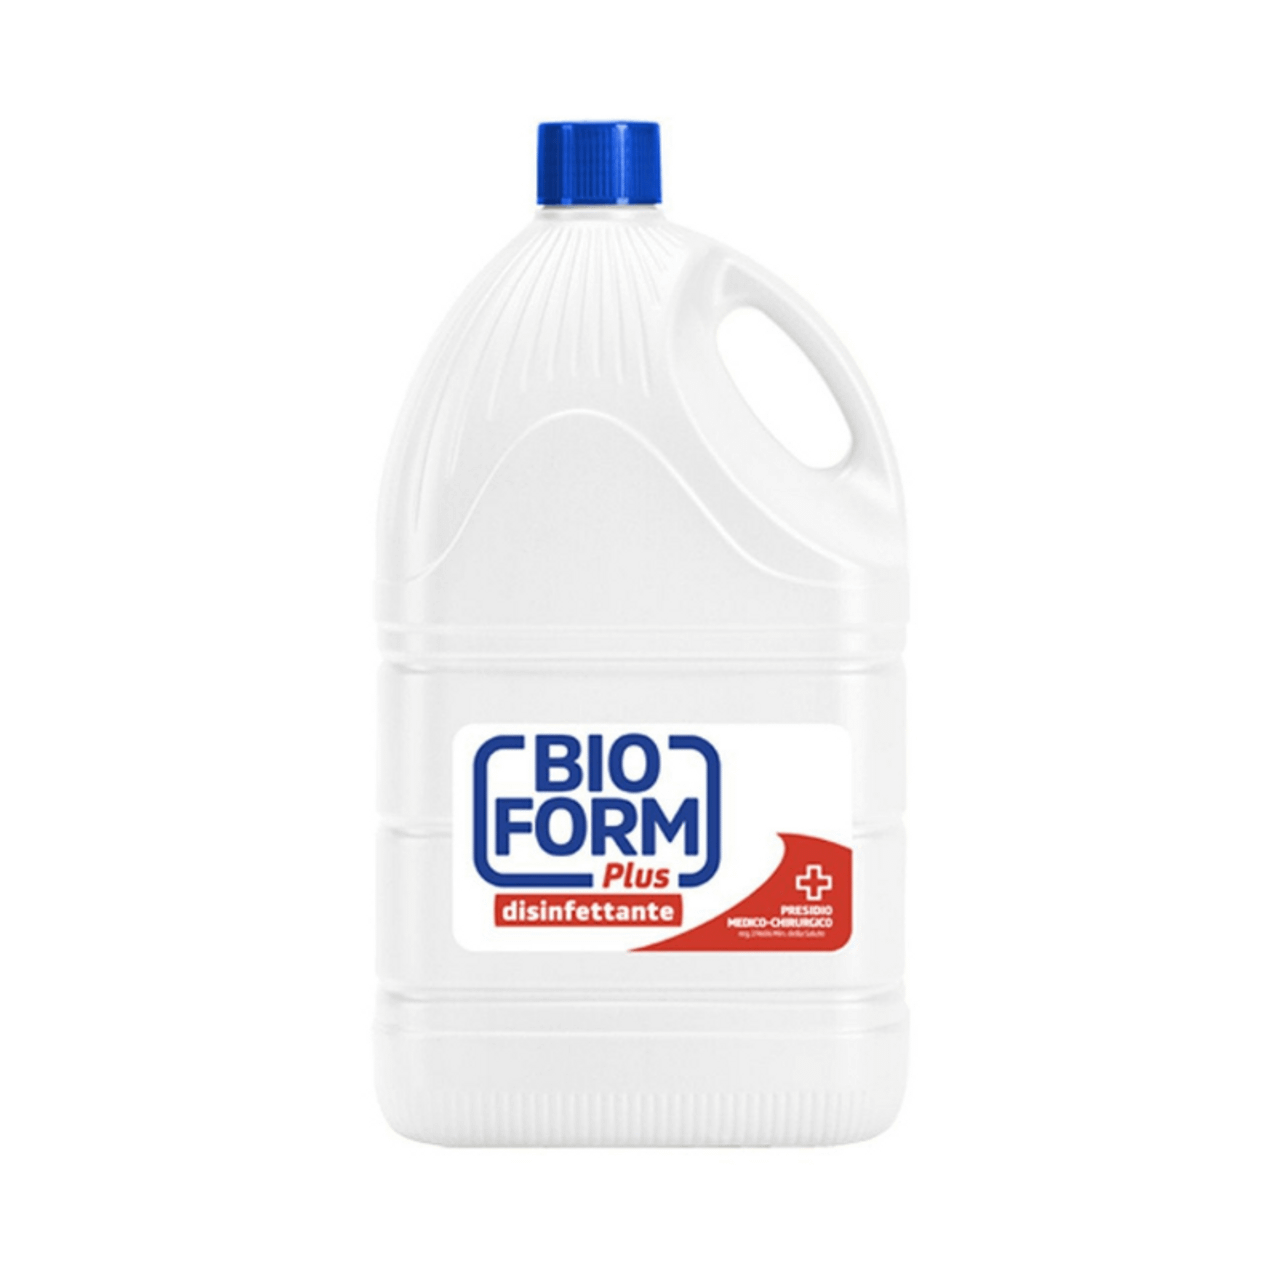 Bioform Plus Disinfettante per Superfici Prodotto per Igiene Pavimenti 5000 ml